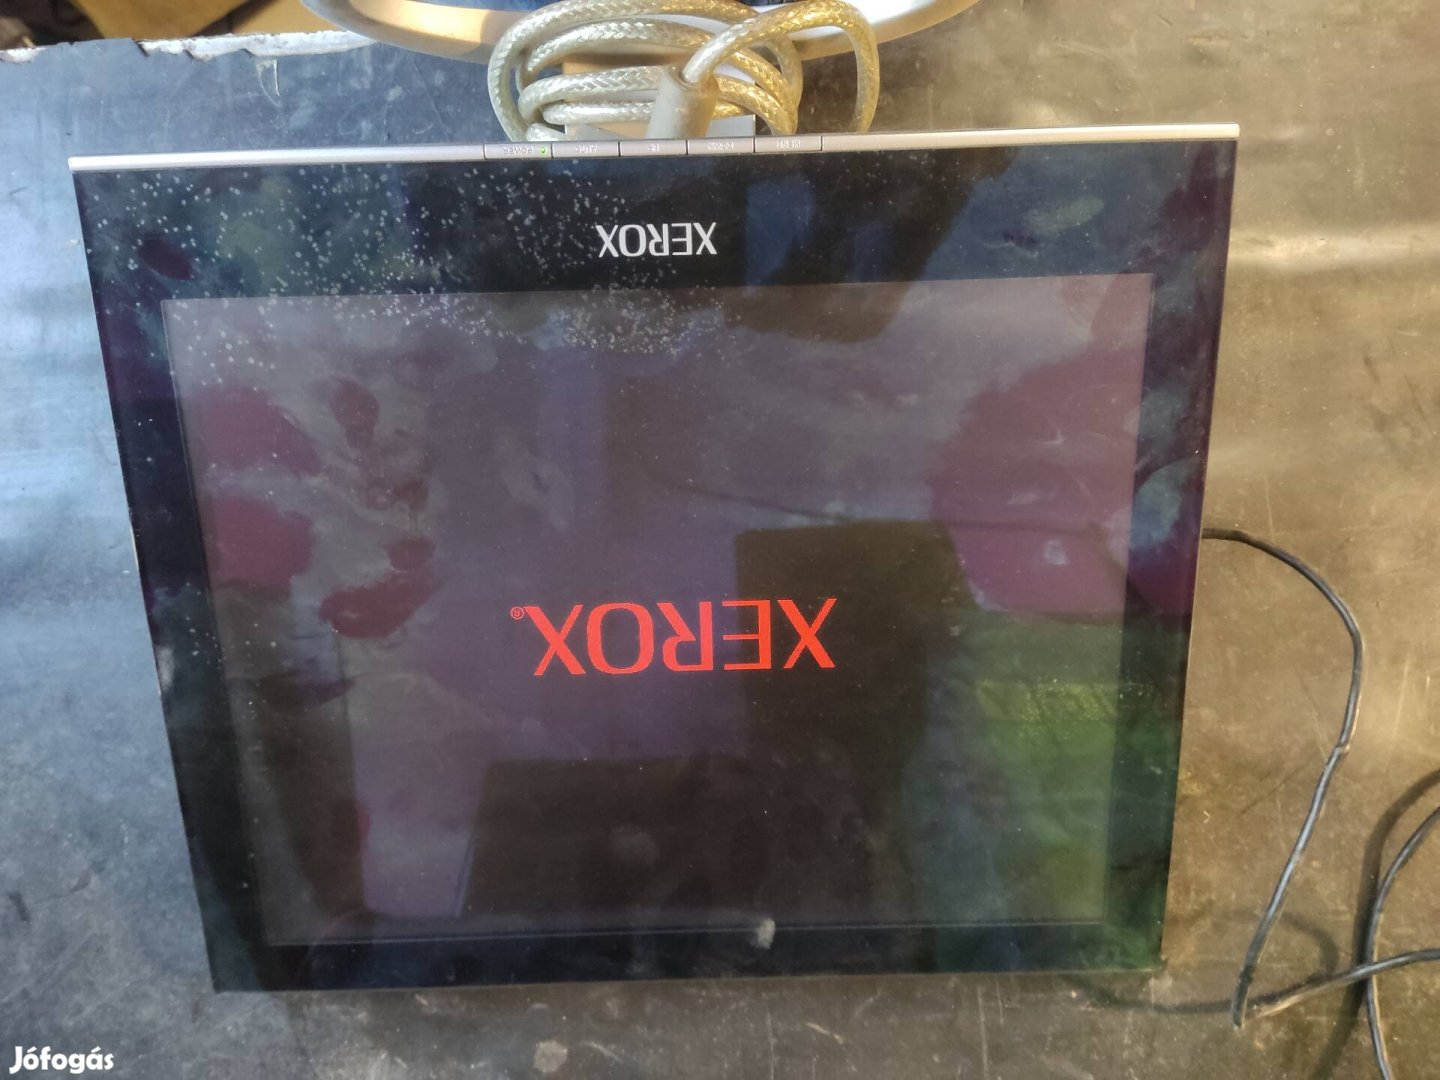 Xerox XL755i monitor